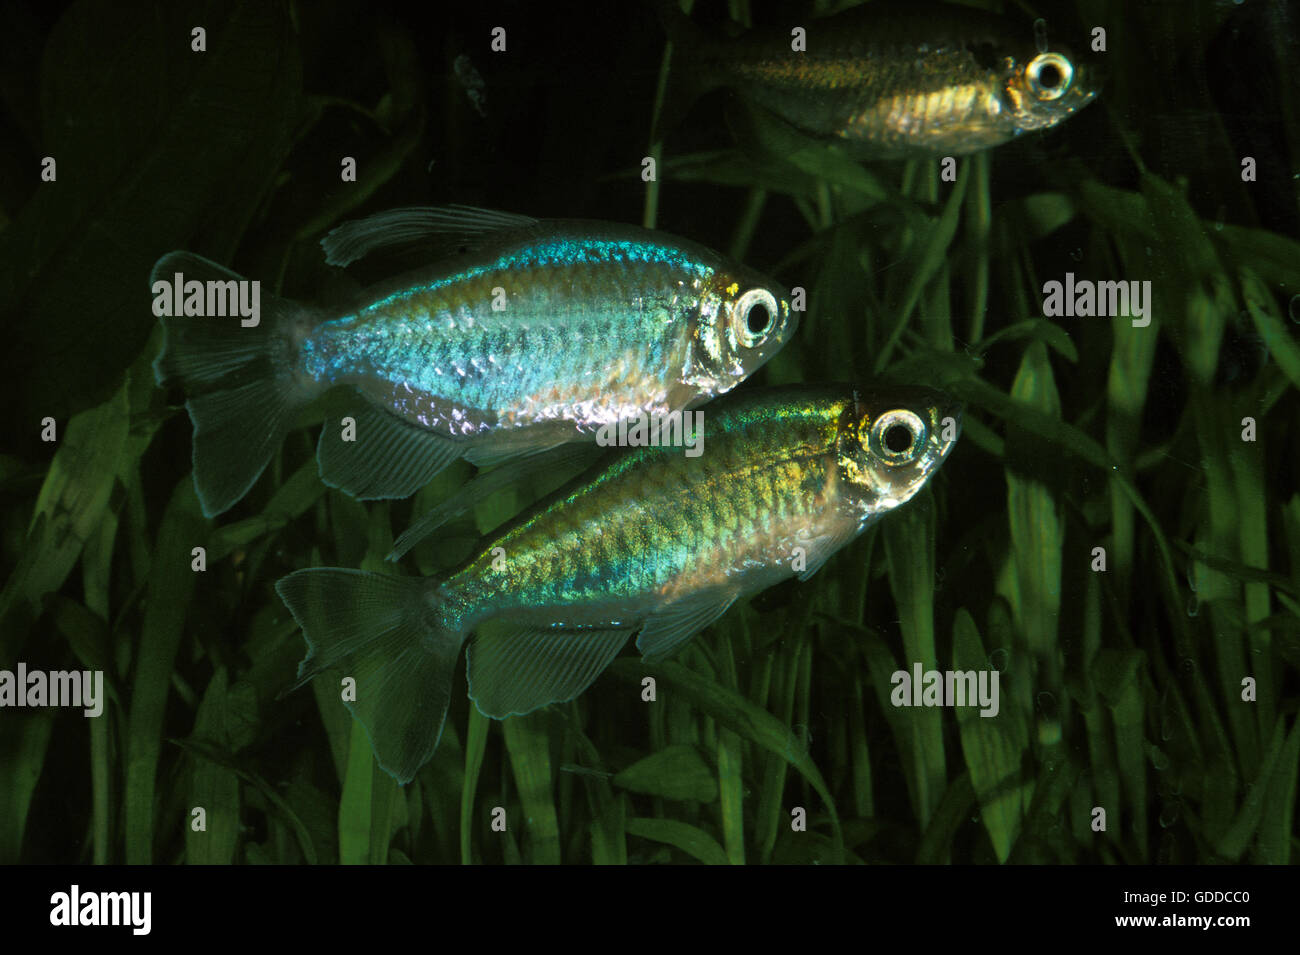 Congo Tetra, phenacogrammus interruptus, Aquarium Fishes Stock Photo